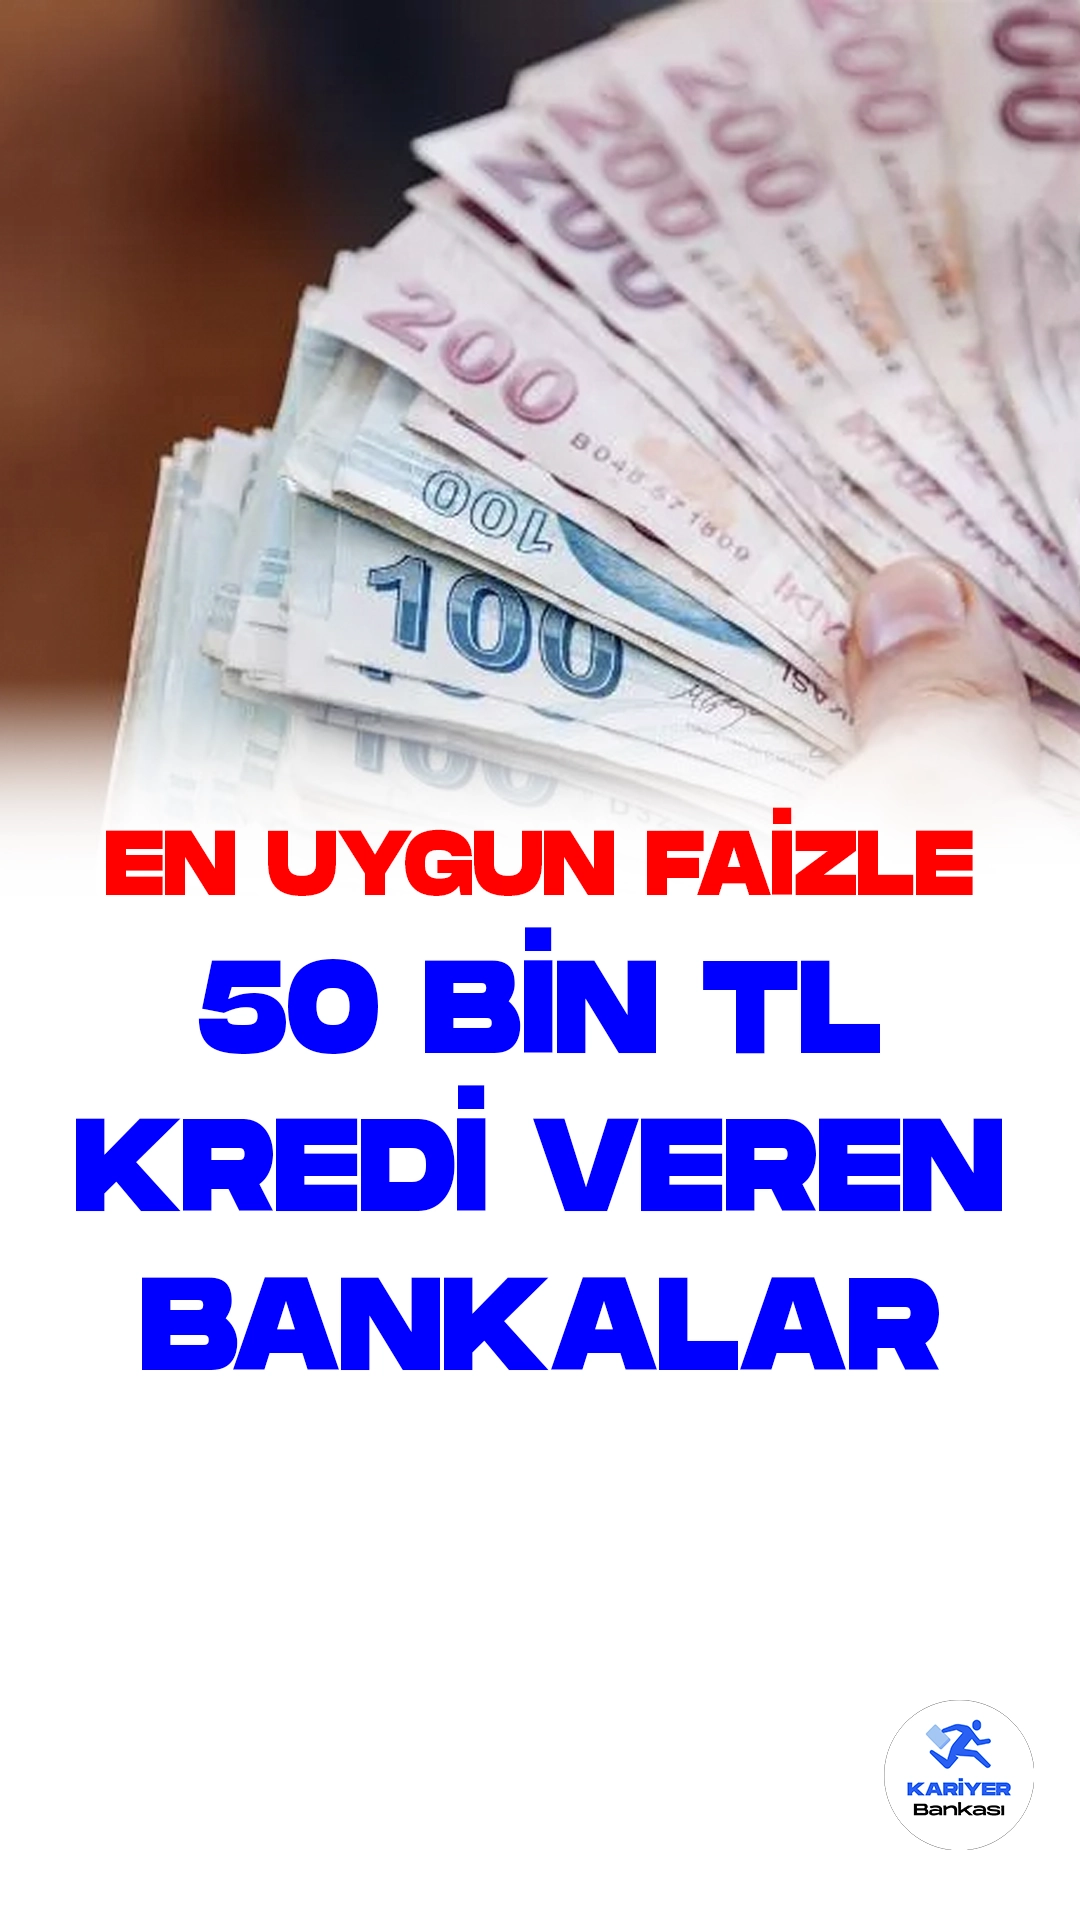 Nakit İhtiyaçlar için En Uygun Faizle 50 Bin TL Kredi Veren Bankalar.Türkiye Cumhuriyet Merkez Bankası politika faizini açıkladıktan sonra bankalar faiz oranlarında yükselmeye gitti. İhtiyaç kredisi faiz oranları artış gösterirken, en uygun faizle kredi veren bankalar hangisi, sizler için derledik.